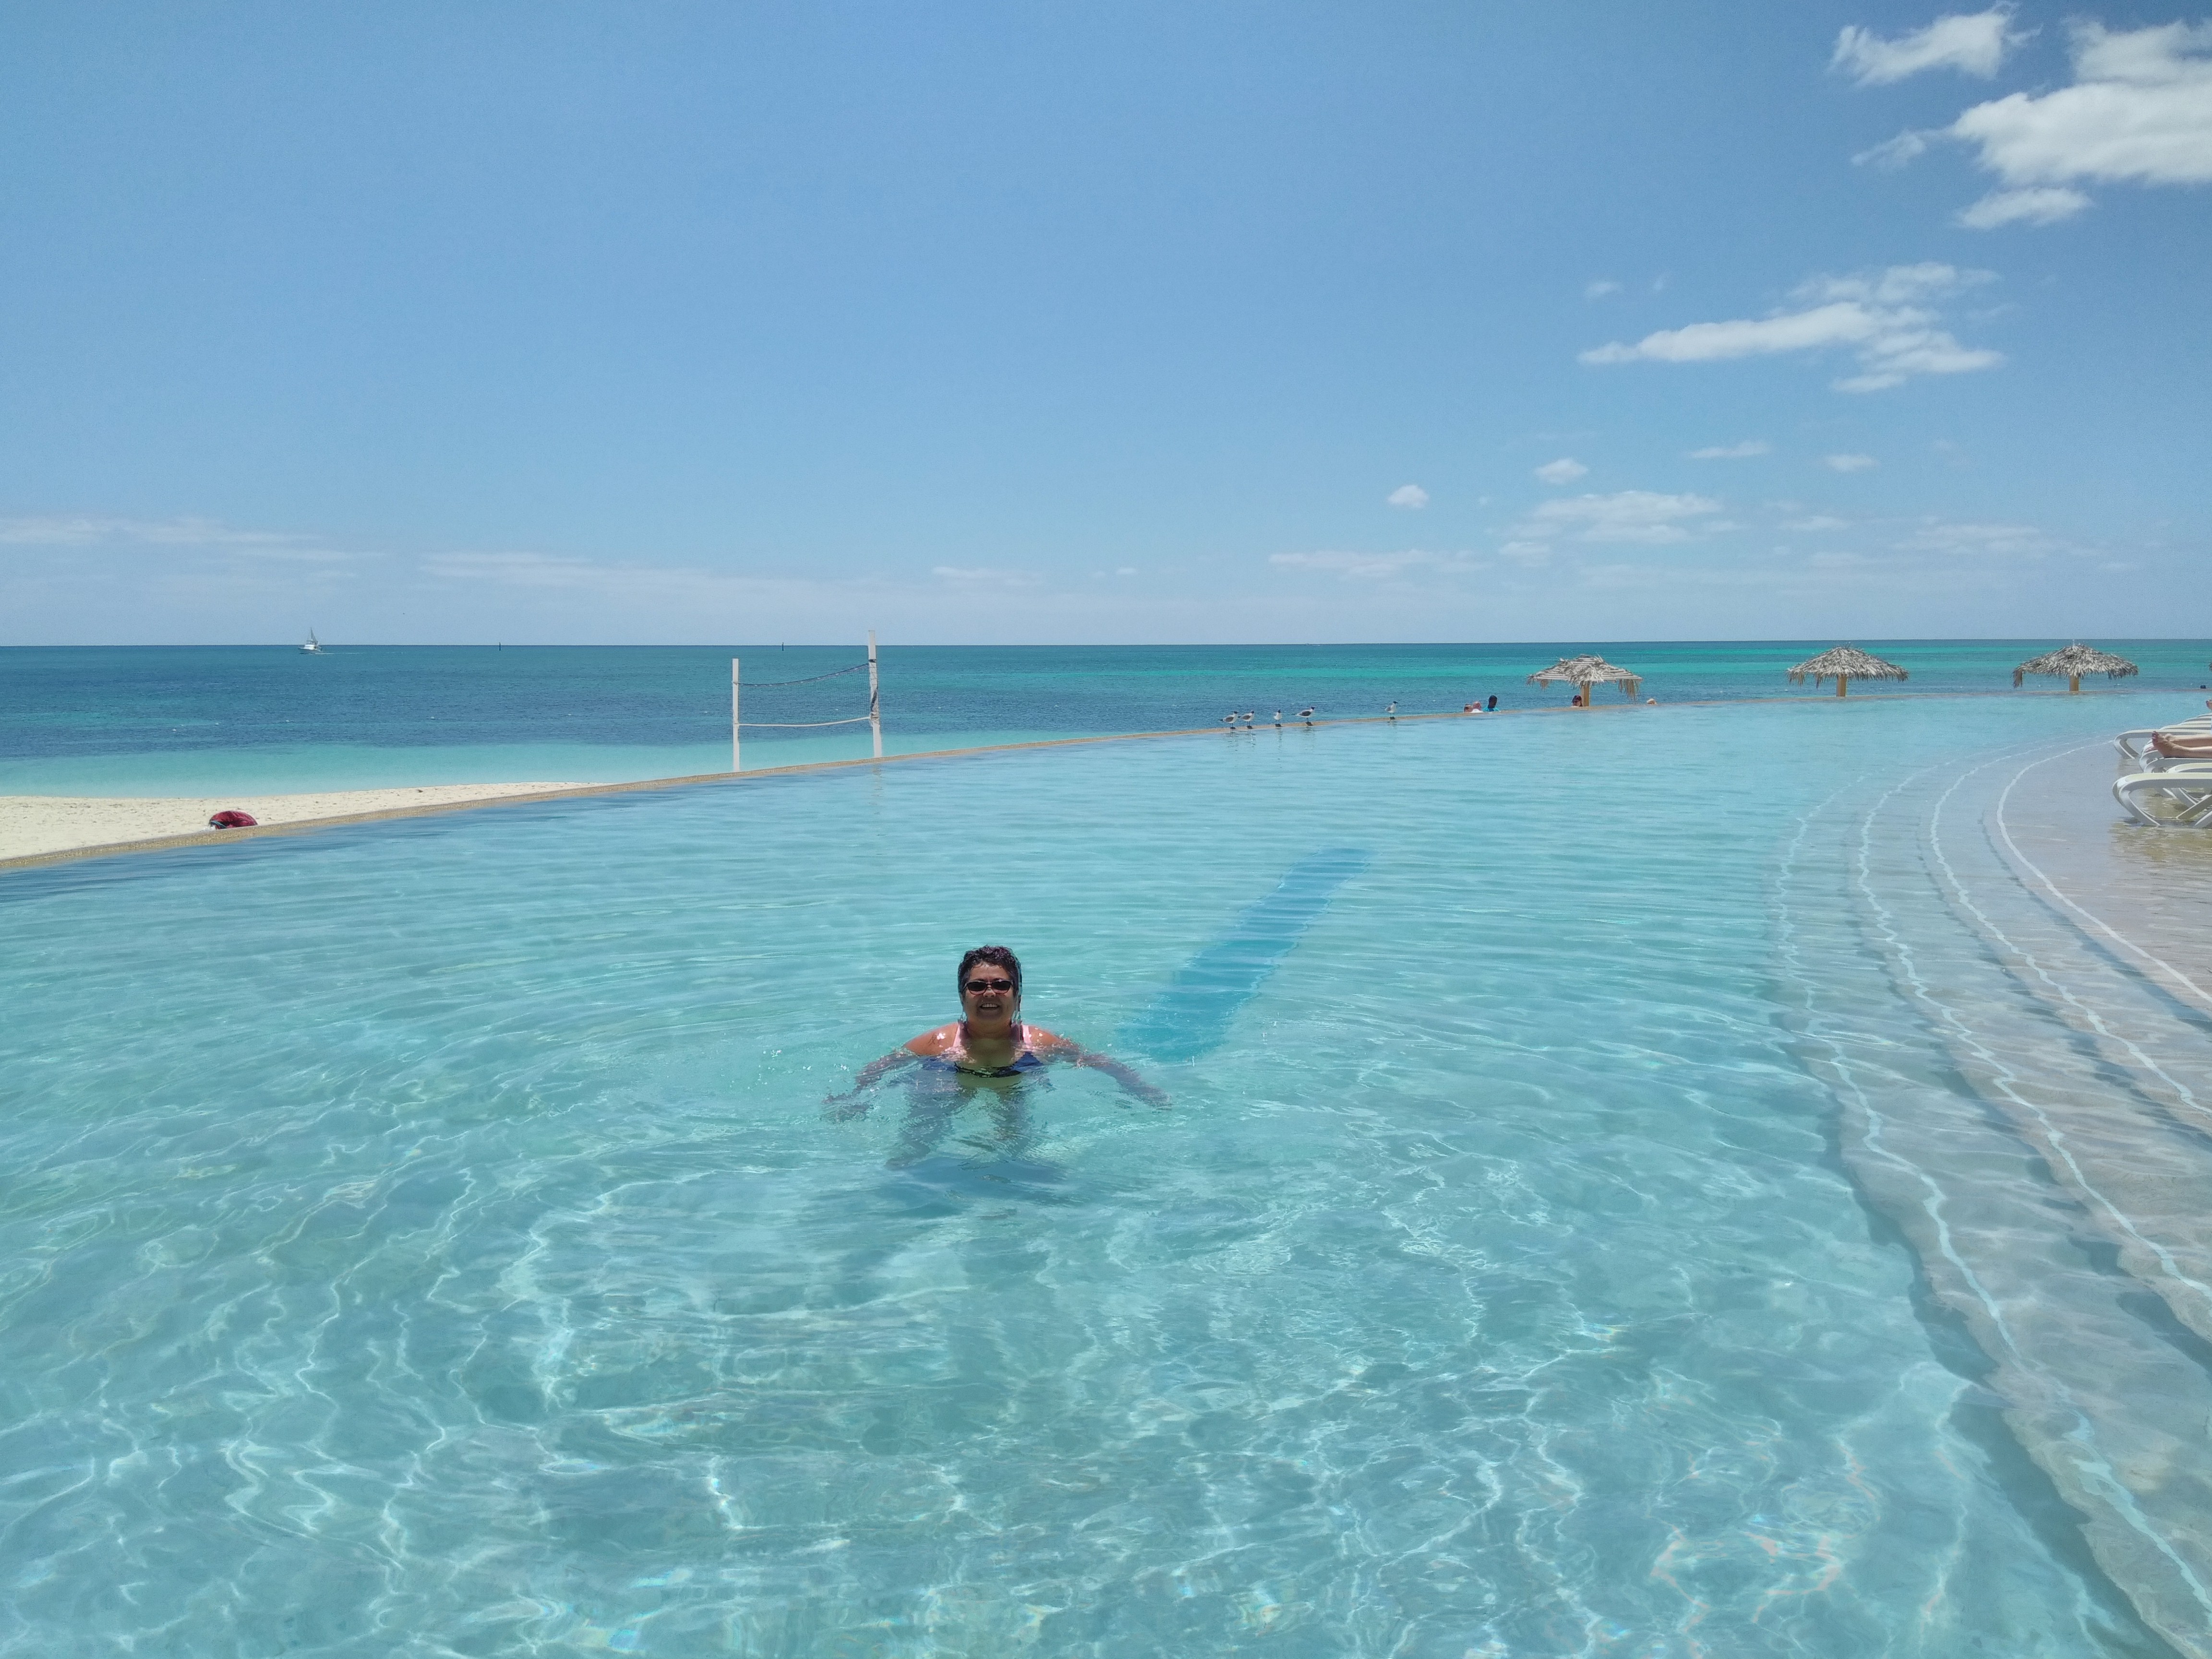 Cruzeiro para Bahamas, piscina com fundo infinito, maravilhosa!